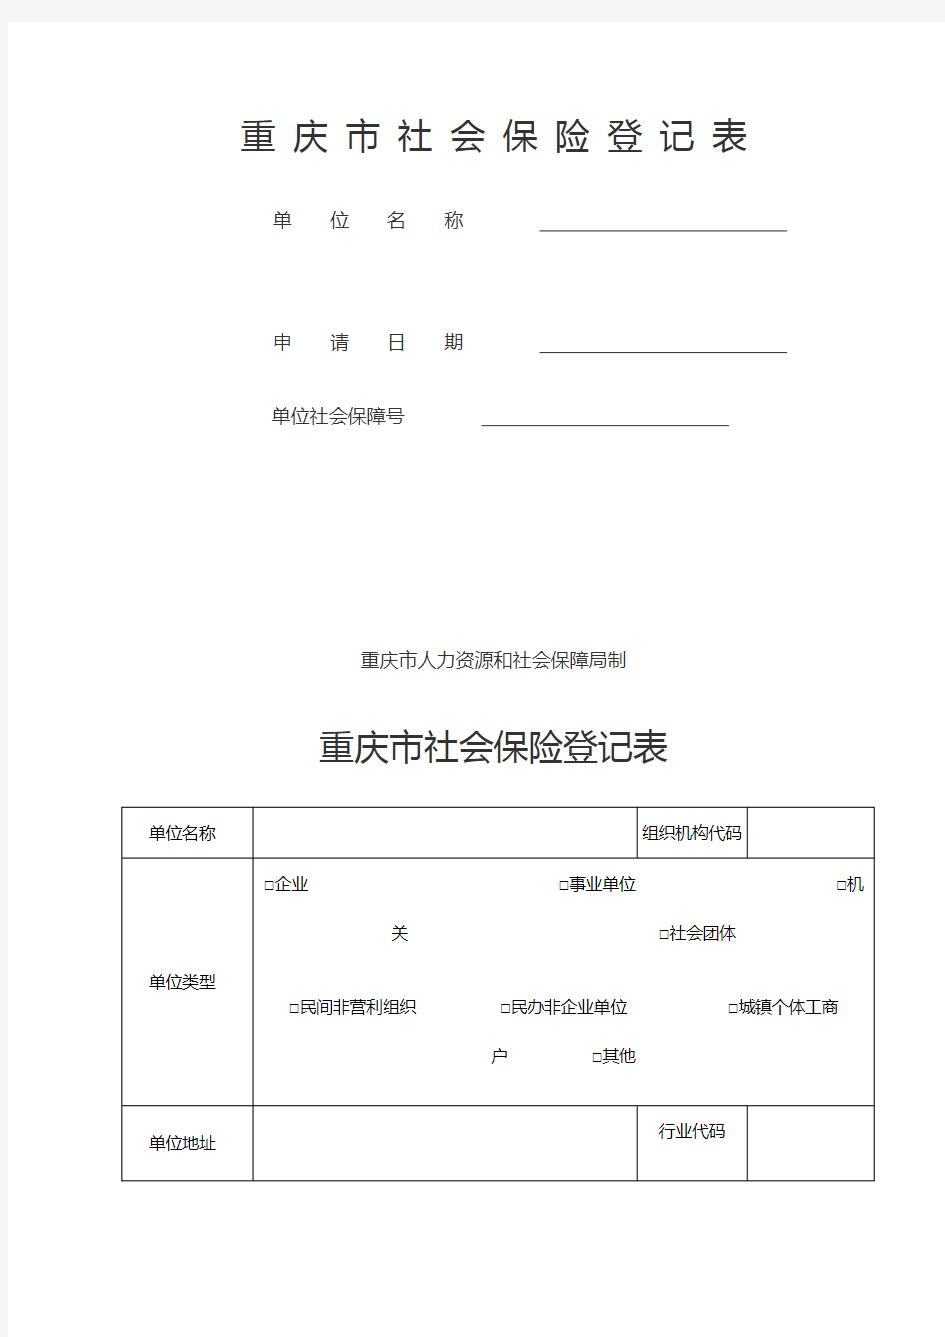 重庆市社会保险登记表